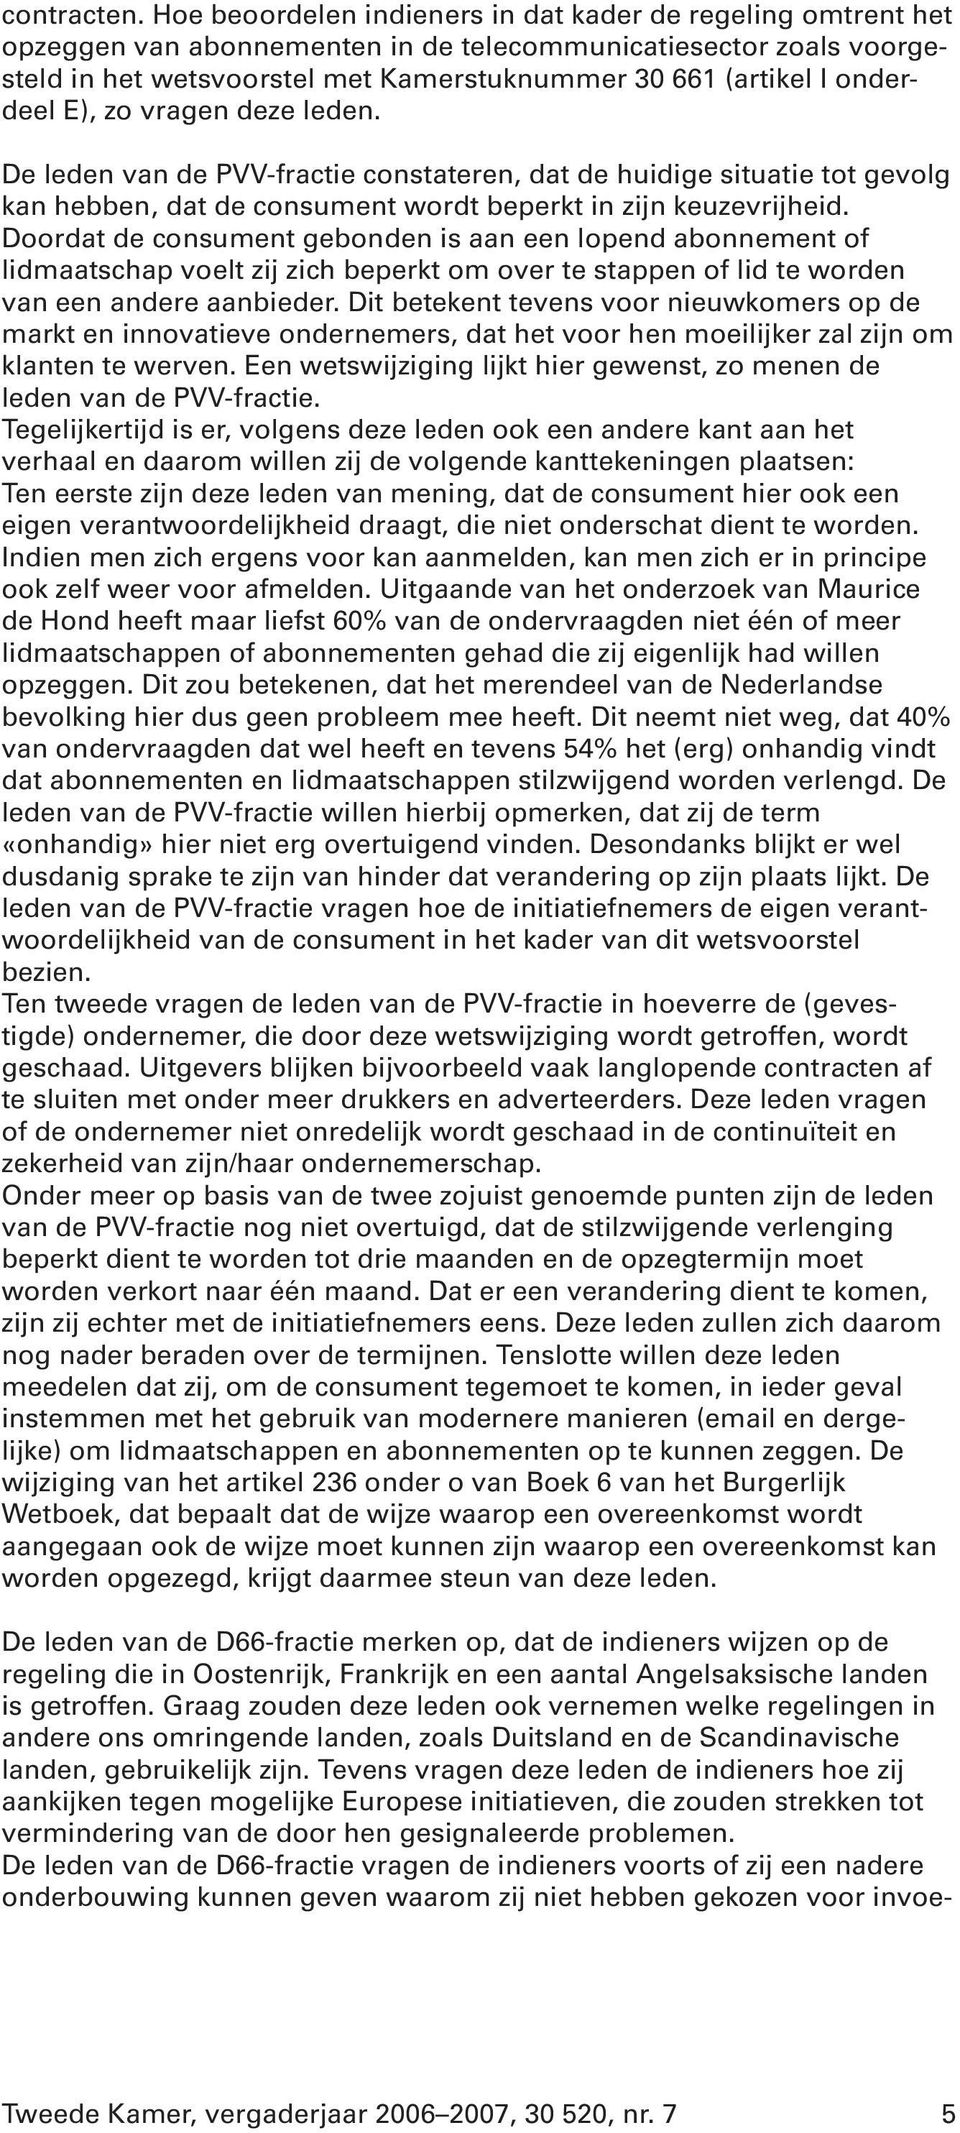 onderdeel E), zo vragen deze leden. De leden van de PVV-fractie constateren, dat de huidige situatie tot gevolg kan hebben, dat de consument wordt beperkt in zijn keuzevrijheid.